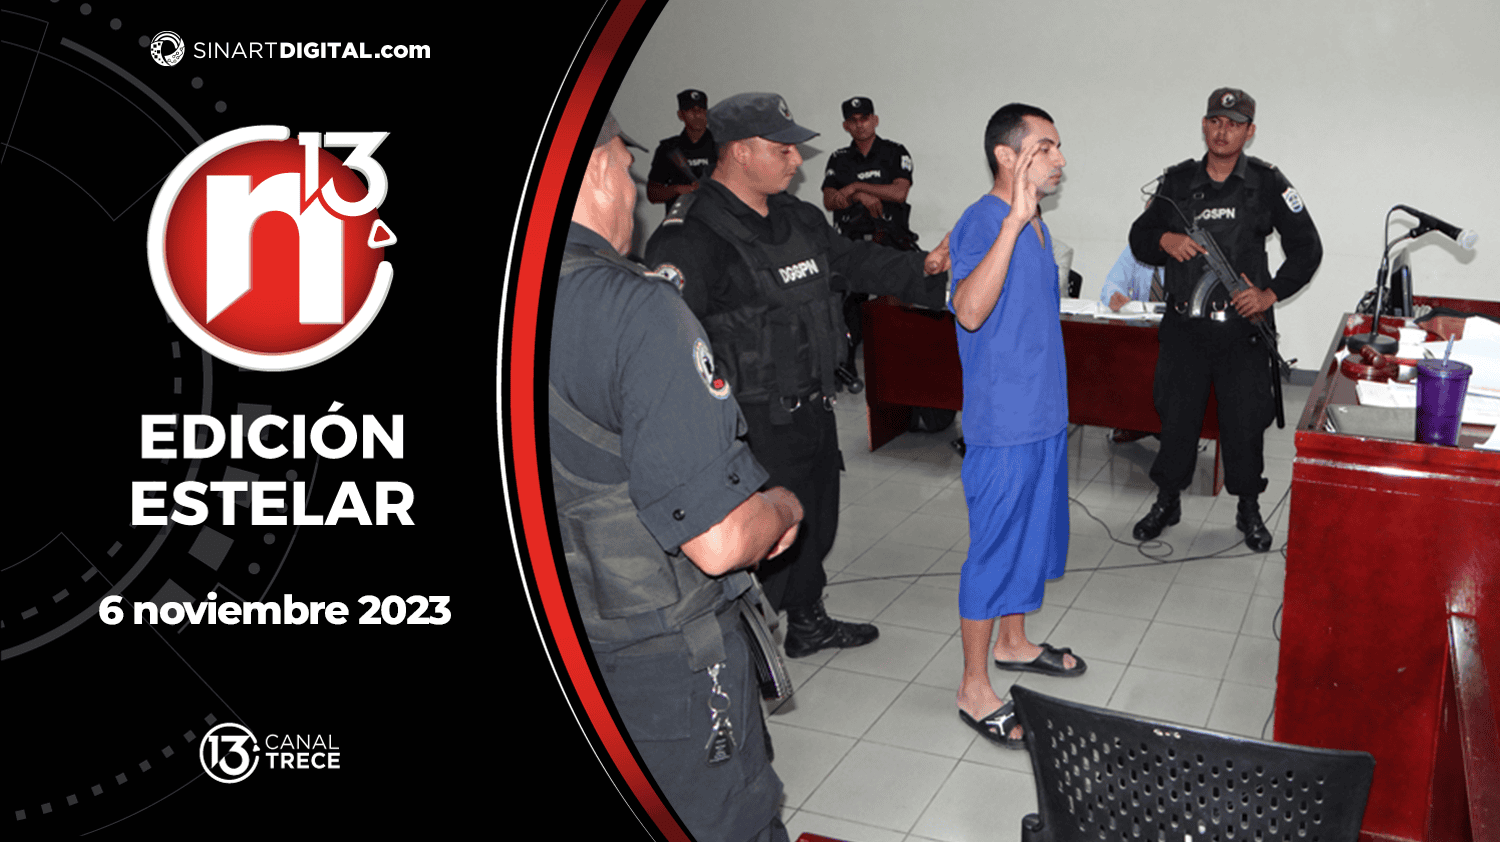 Edición Estelar - 6 noviembre 2023 | Trece Noticias